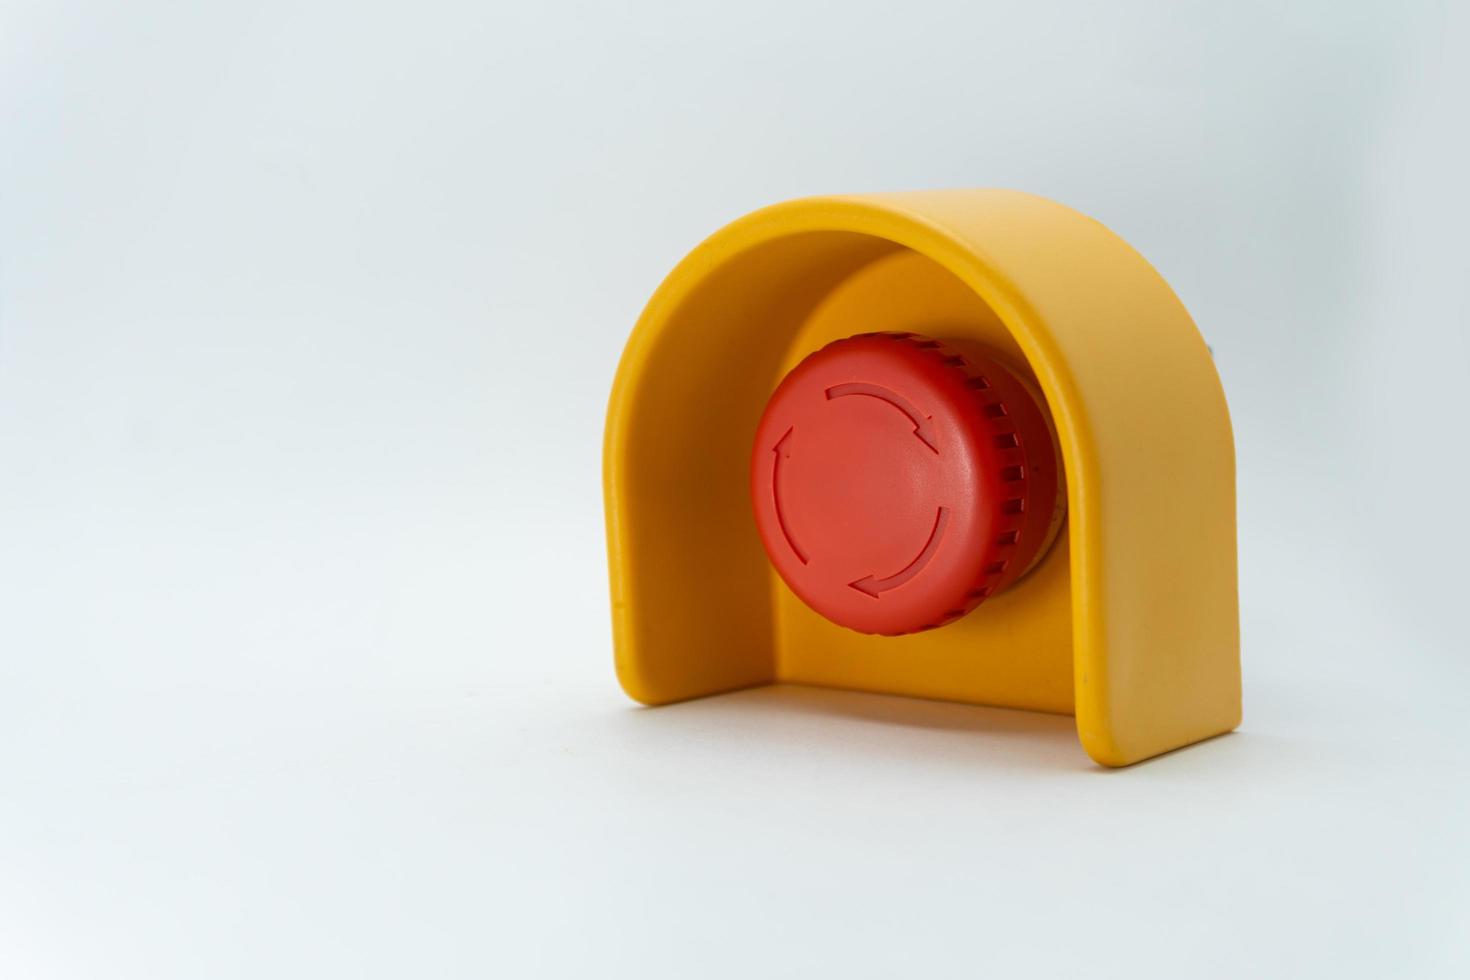 arrêtez le bouton rouge et la main du travailleur sur le point d'appuyer dessus. bouton d'arrêt d'urgence. gros bouton d'urgence rouge ou bouton d'arrêt pour une pression manuelle. photo